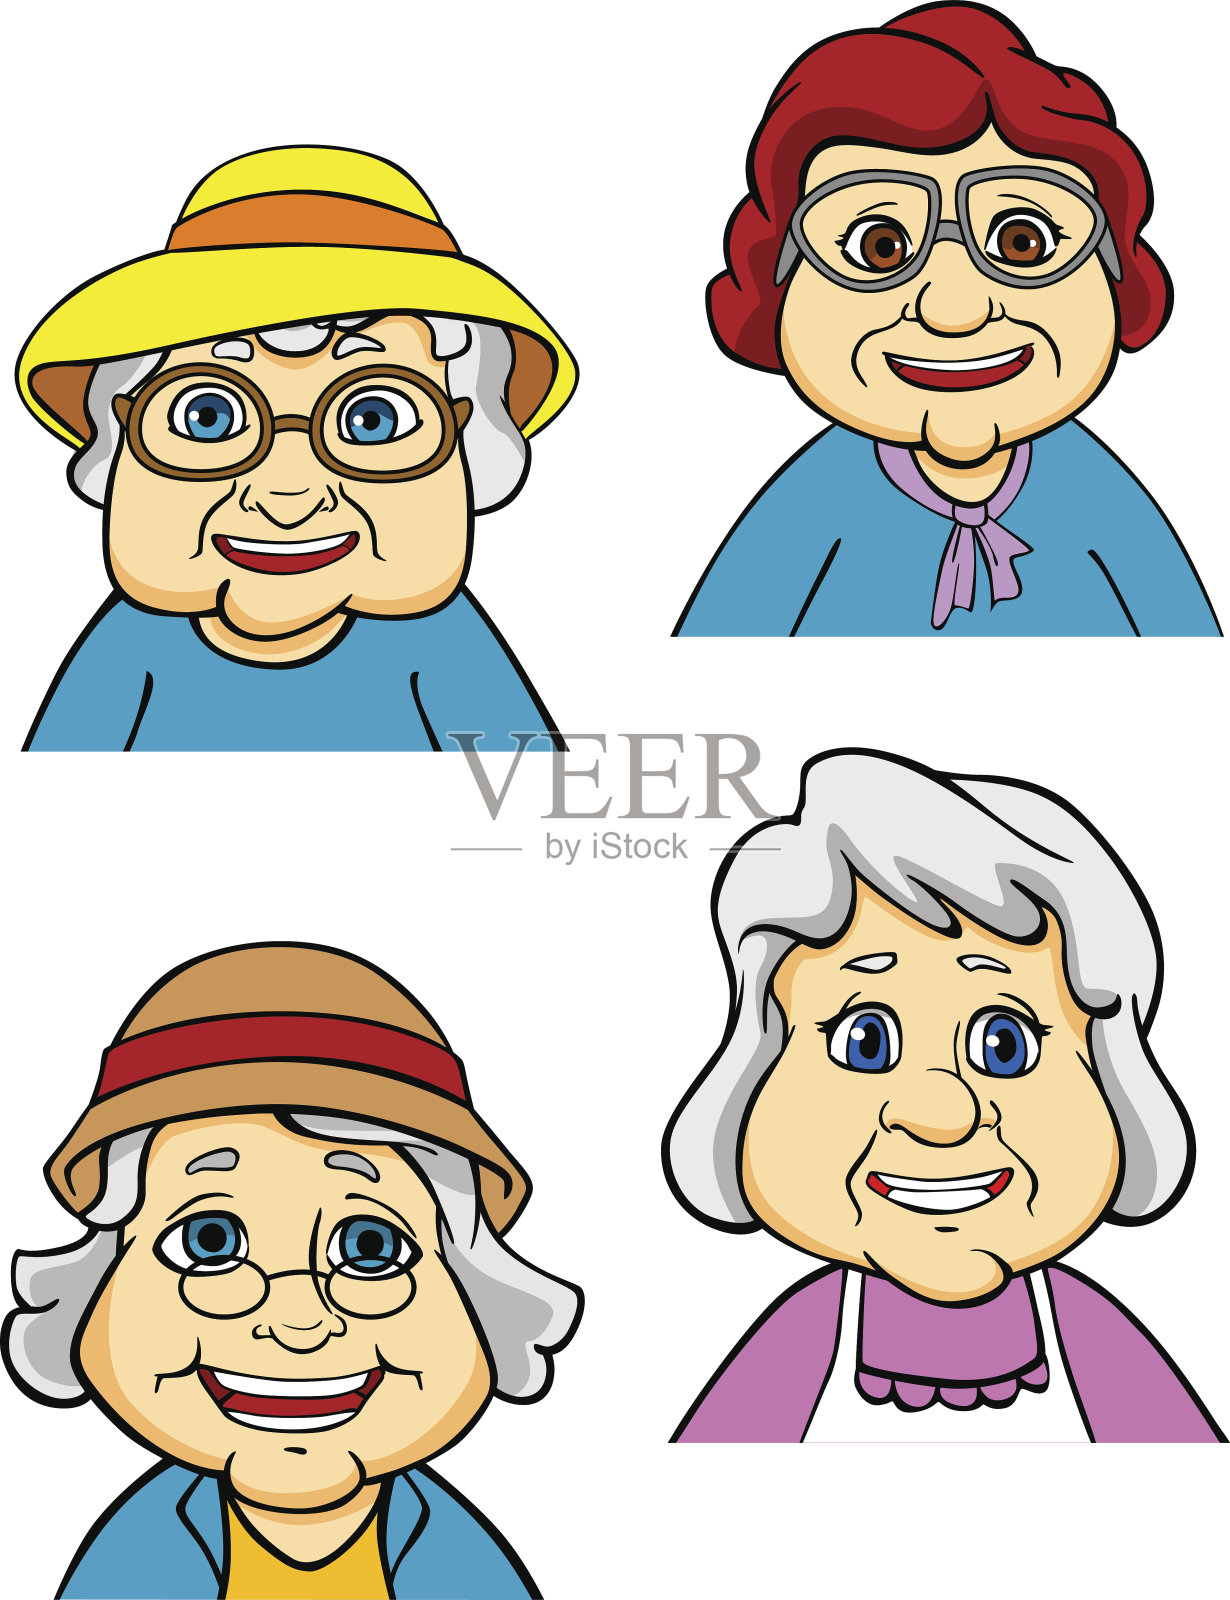 老婆婆和幸福 库存照片. 图片 包括有 幸福, 老婆婆, 快乐, 退休人员, 退休, 更老, 兴高采烈 - 135761902